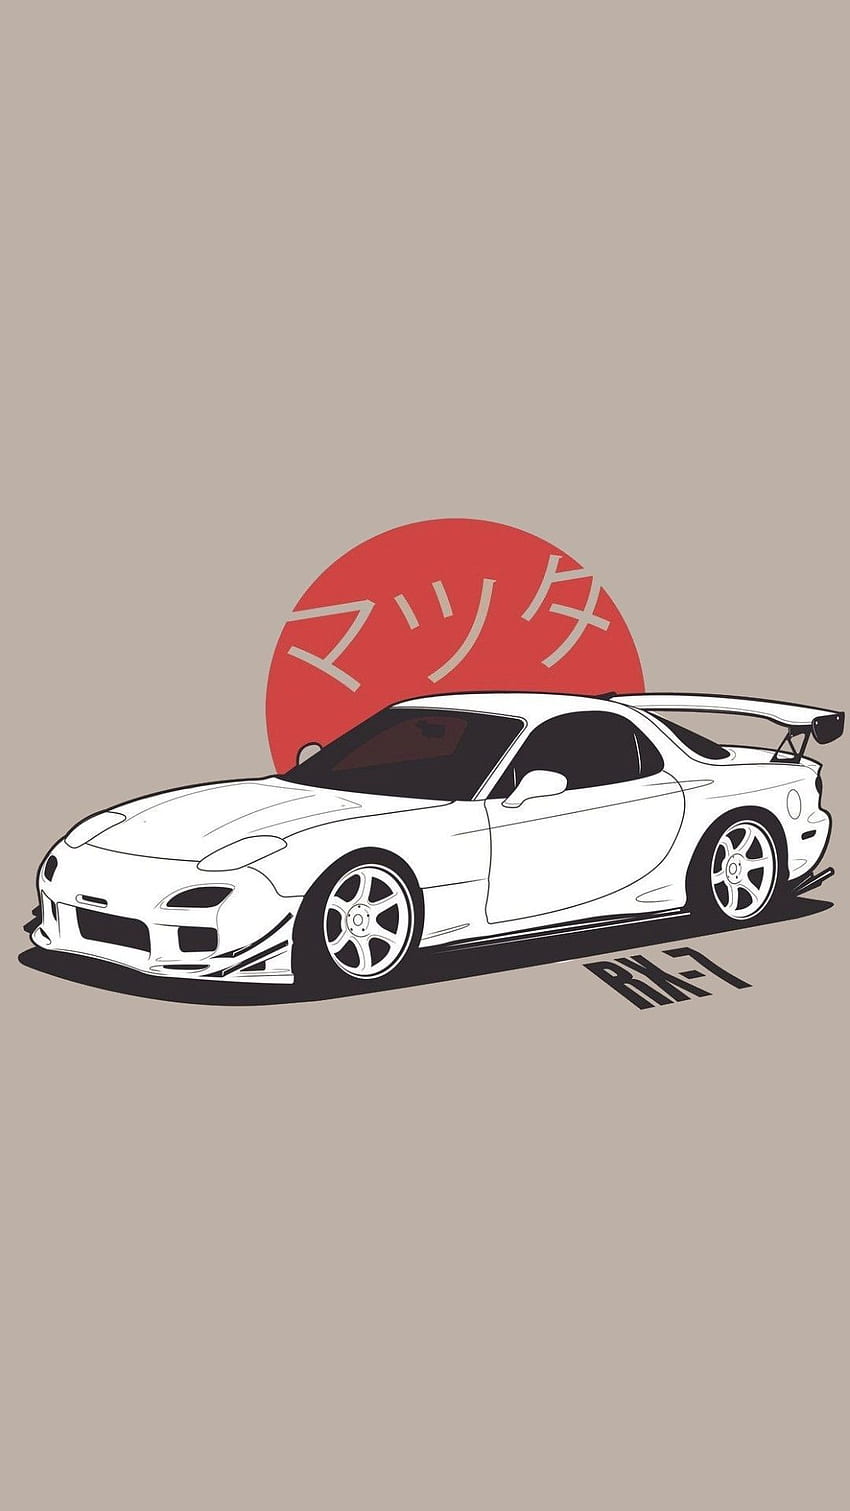 Mazda RX7 FD3S. Ilustraciones de autos, Jdm, autos de arte, autos deportivos japoneses fondo de pantalla del teléfono